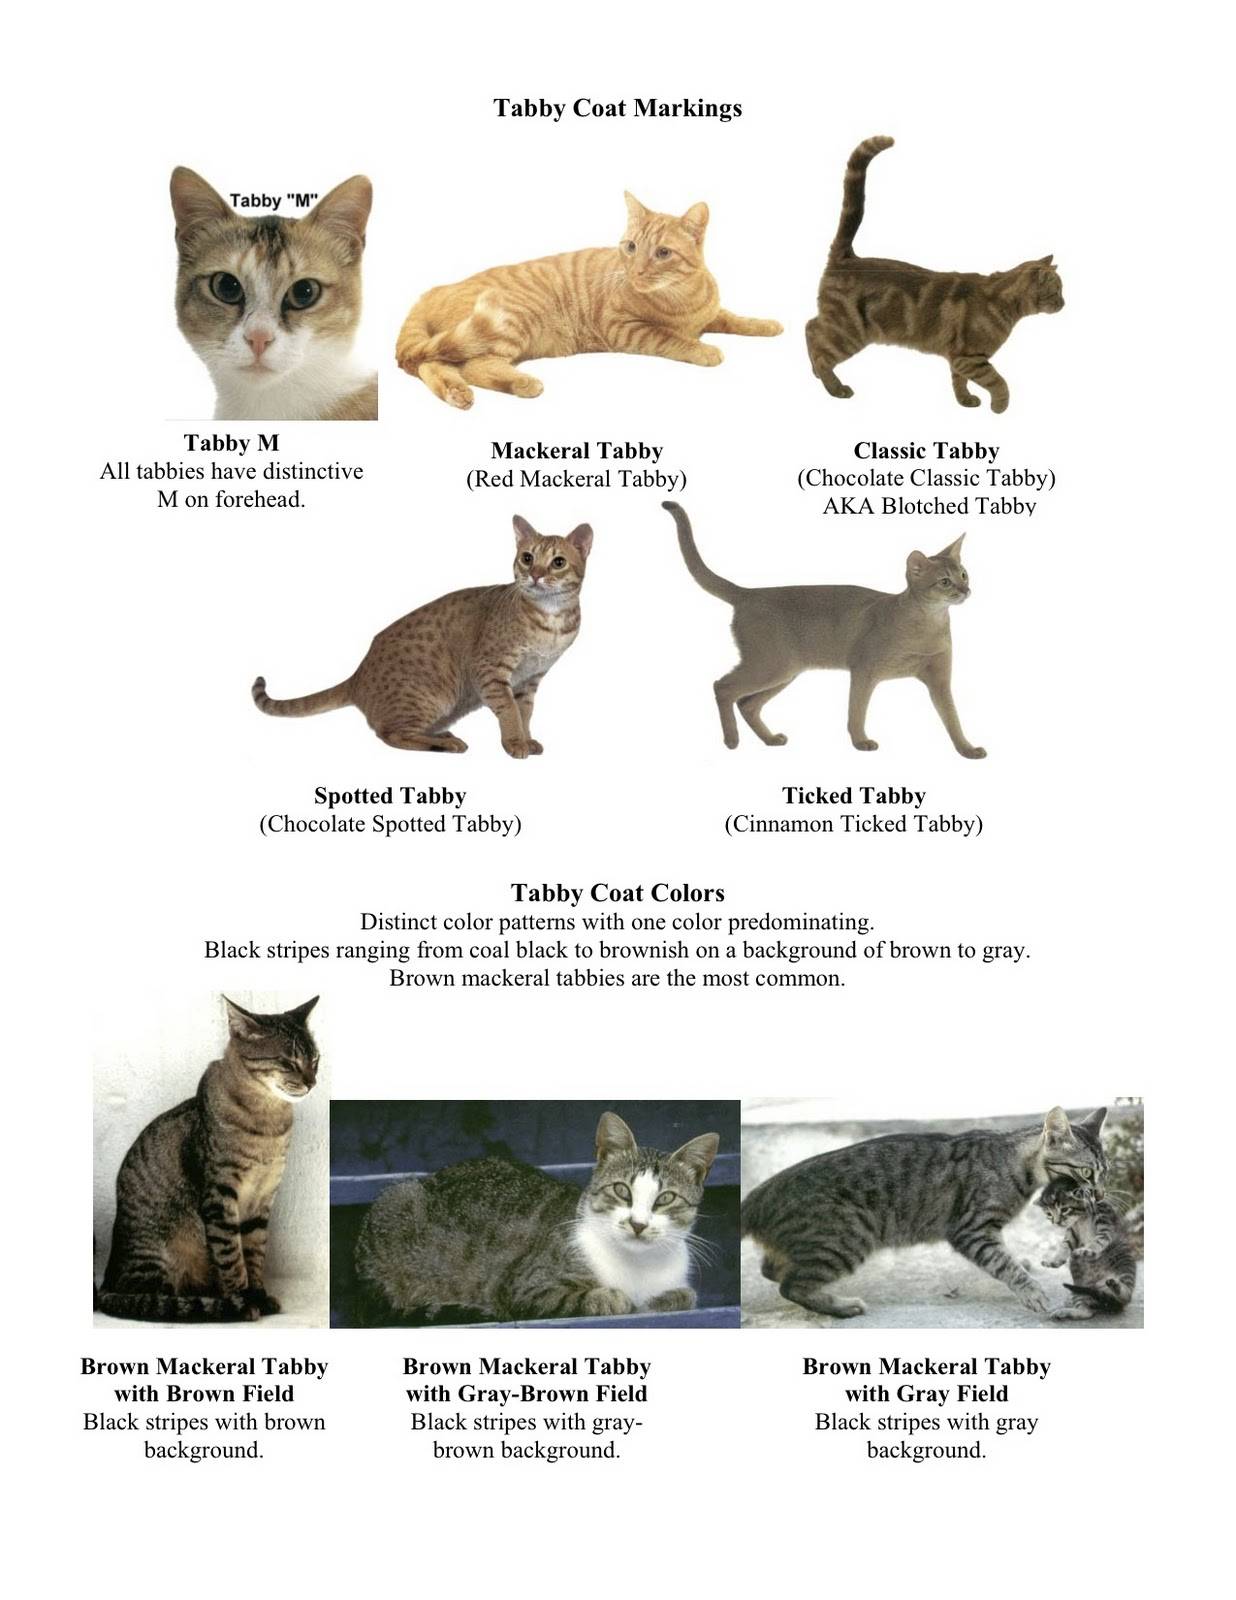 Окрас сибирских кошек (30 фото): черные и белые, дымчатые и золотые коты, полосатые и черепаховые котята